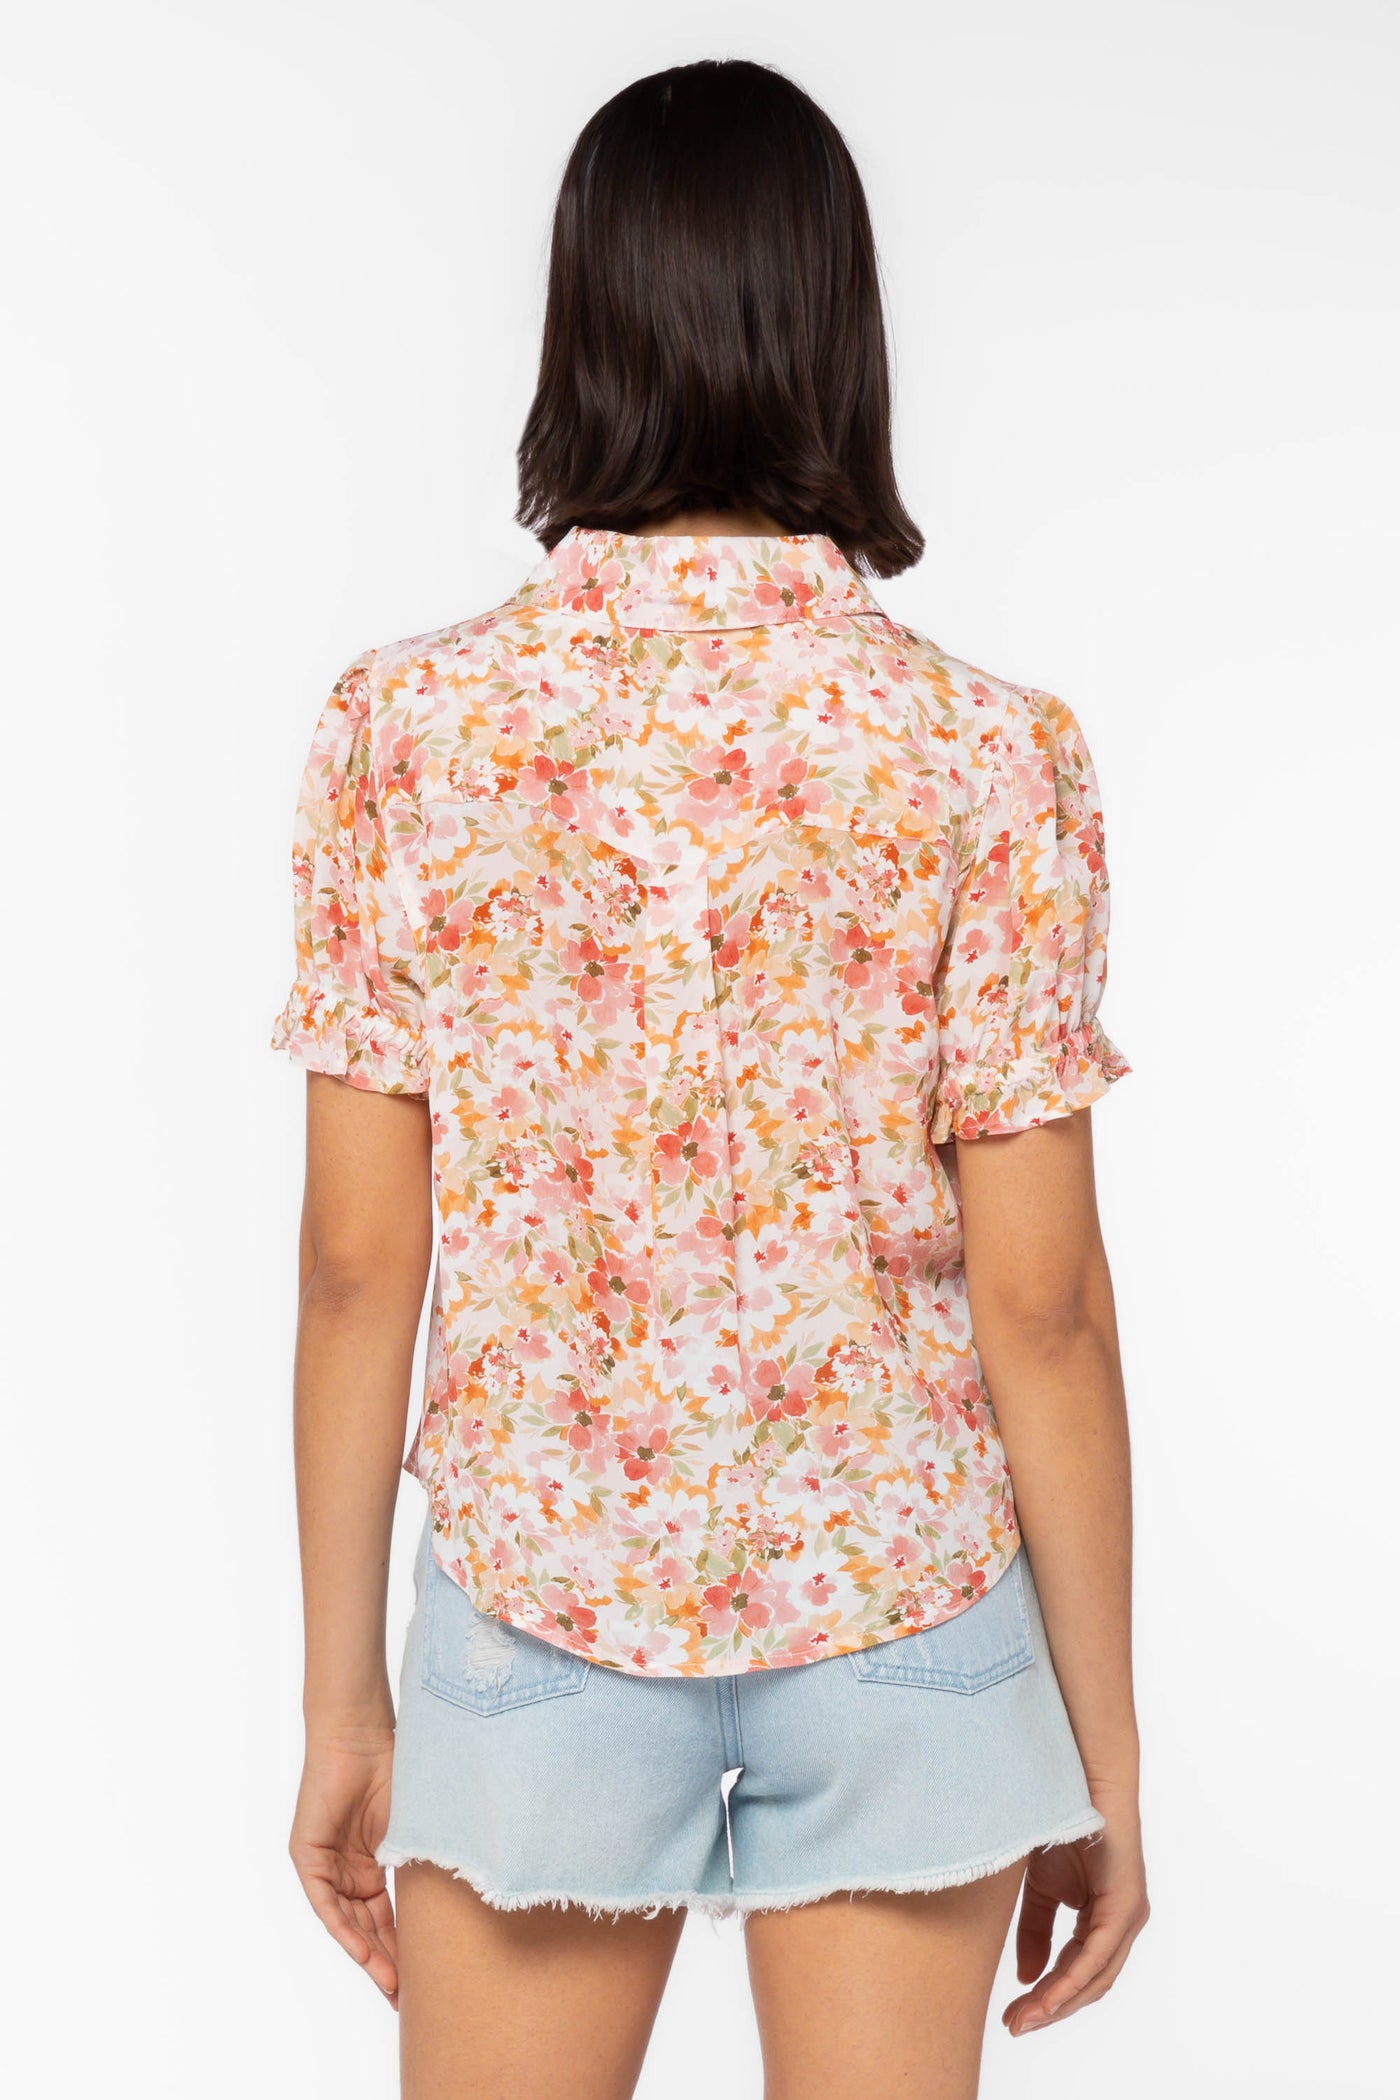 Kitt Orange Floral Shirt - Tops - Velvet Heart Clothing